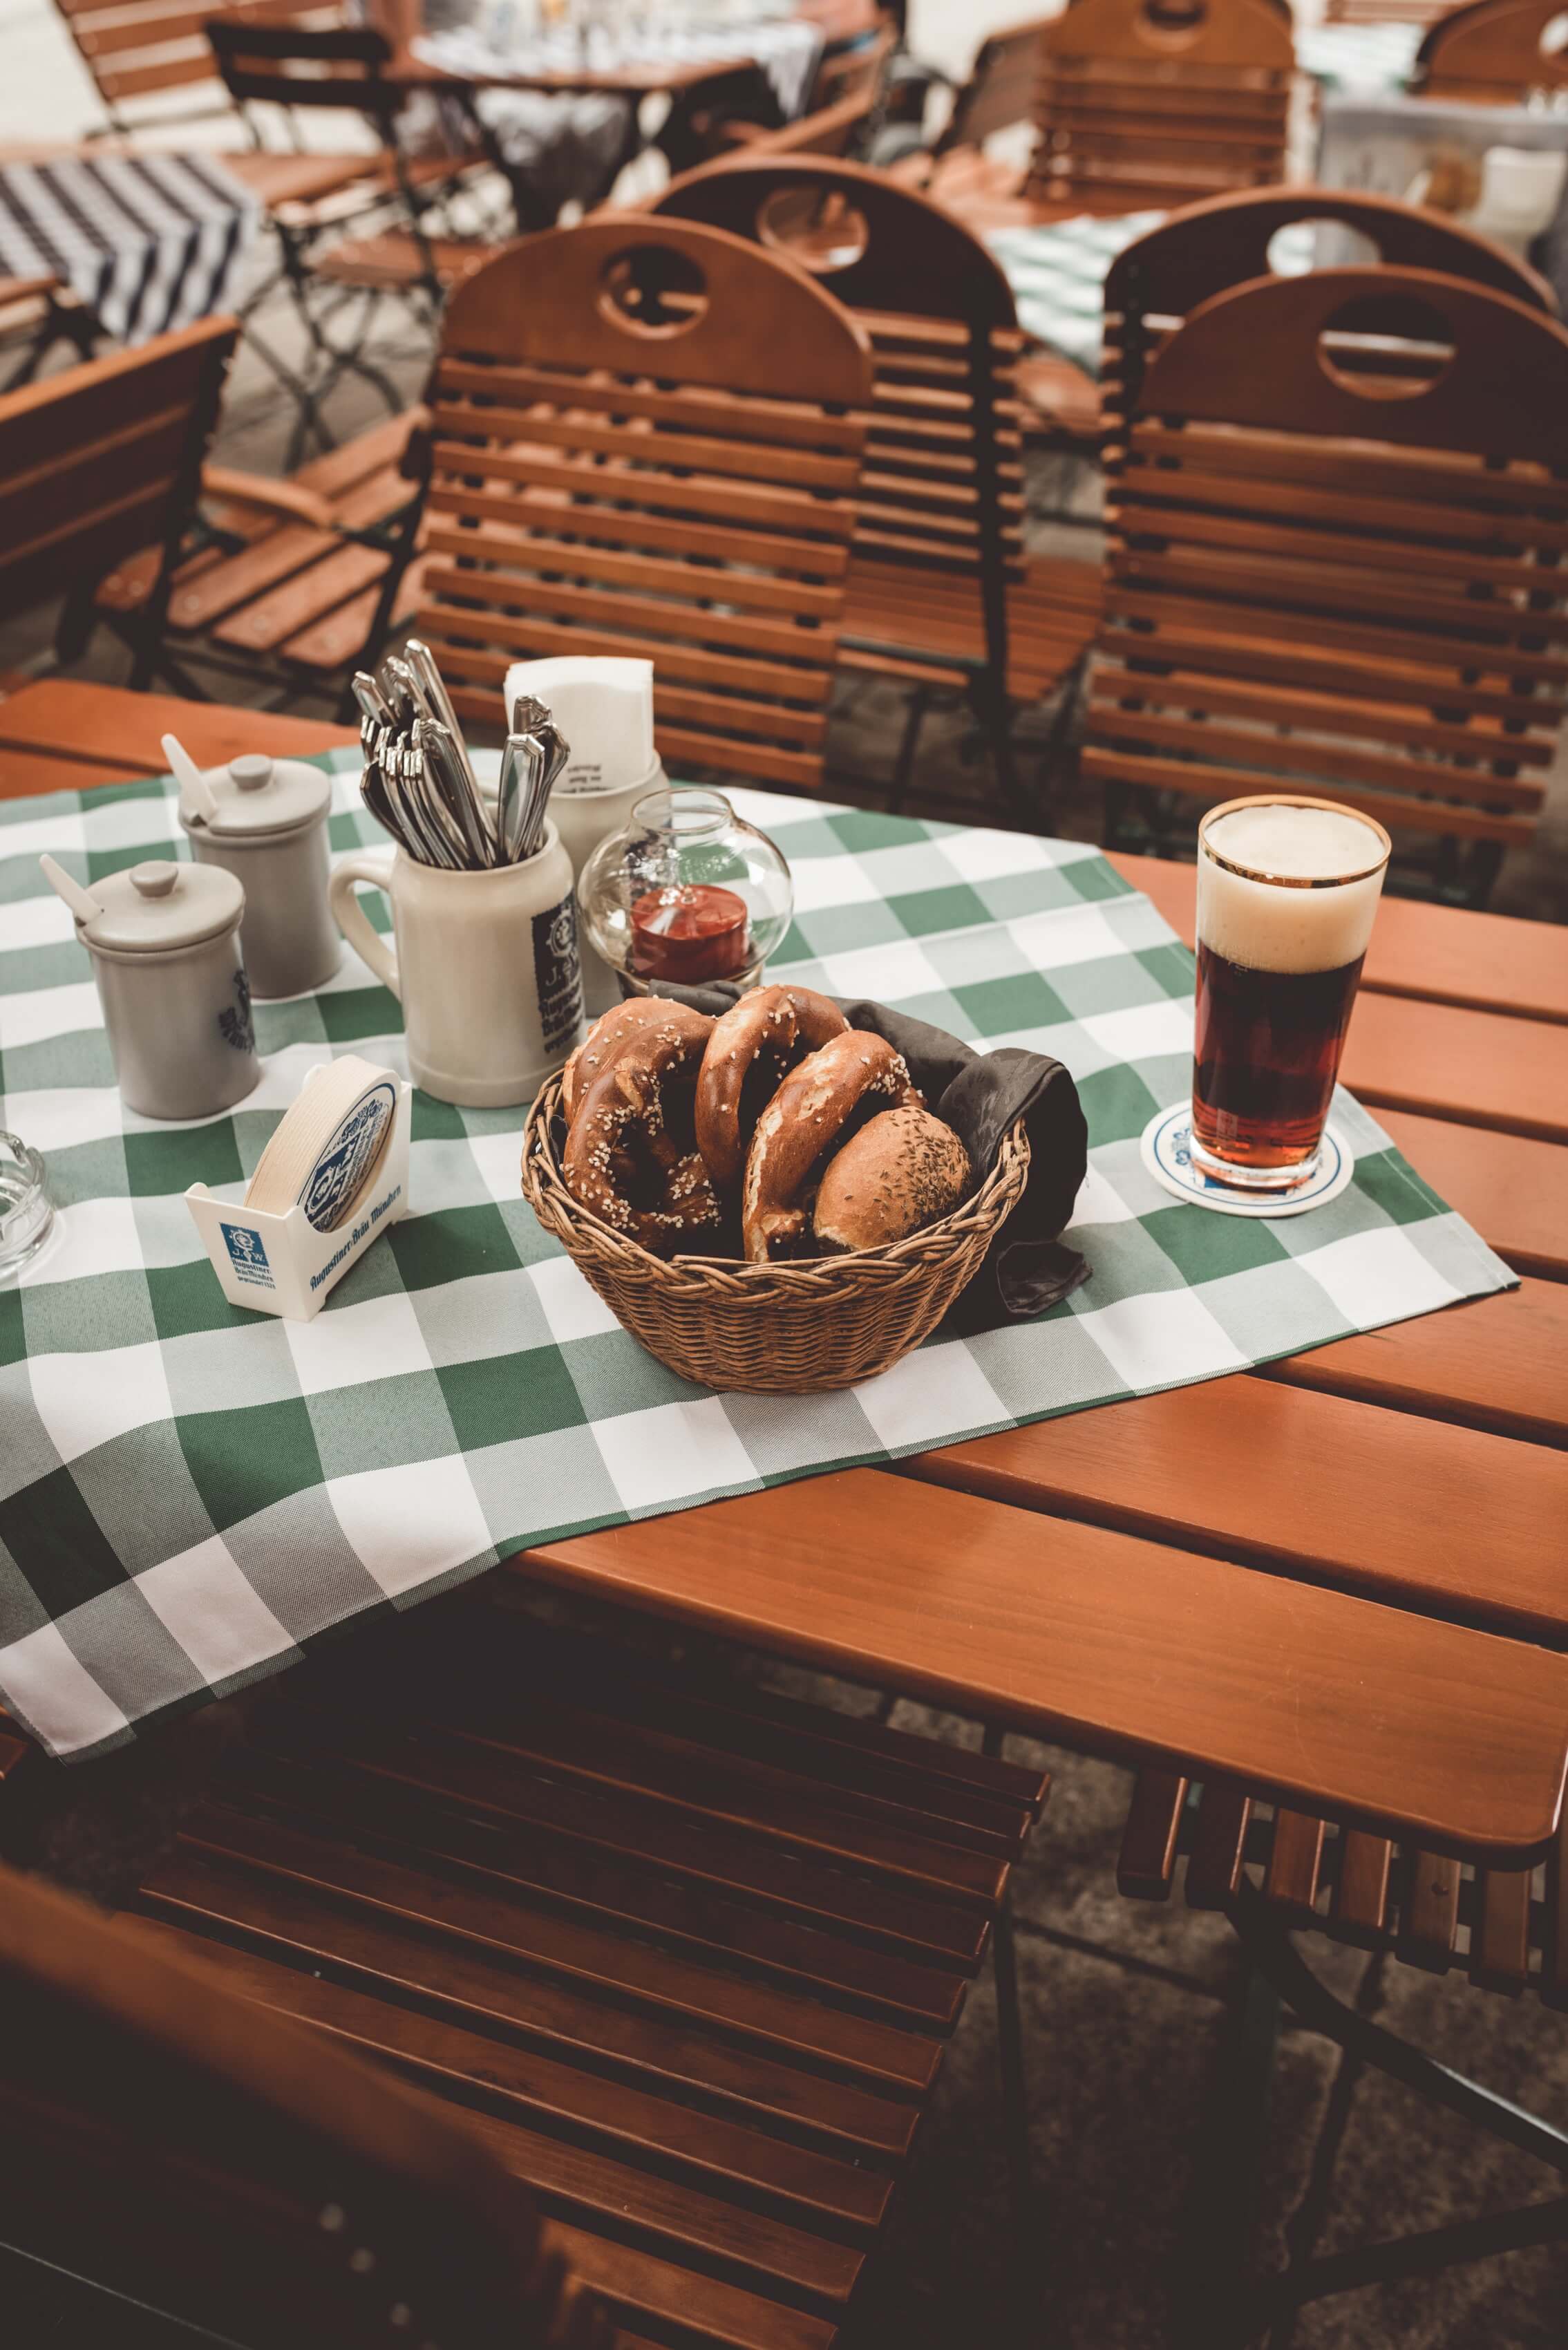 Tische und Stühle in einem Biergarten, auf einer grün-weiß karierten Tischdecke stehen ein Korb Brezeln, ein Glas Bier und Besteck